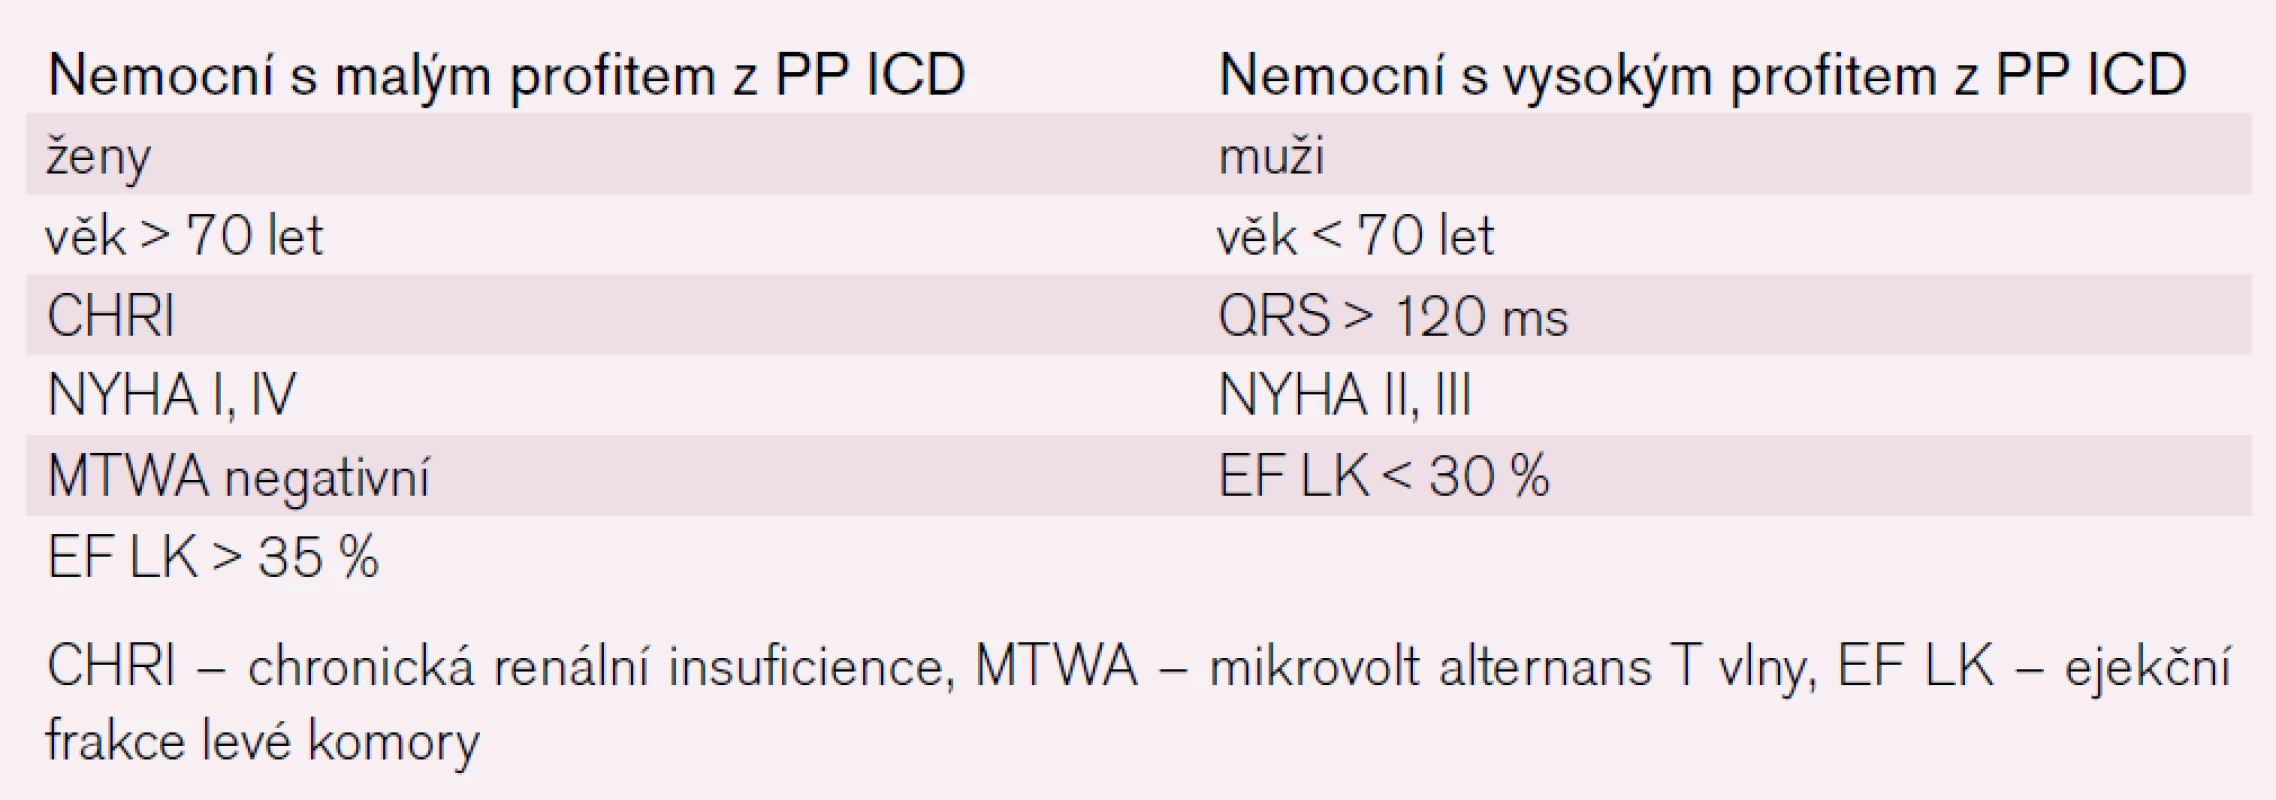 Faktory ovlivňující prospěch z PP implantace ICD.